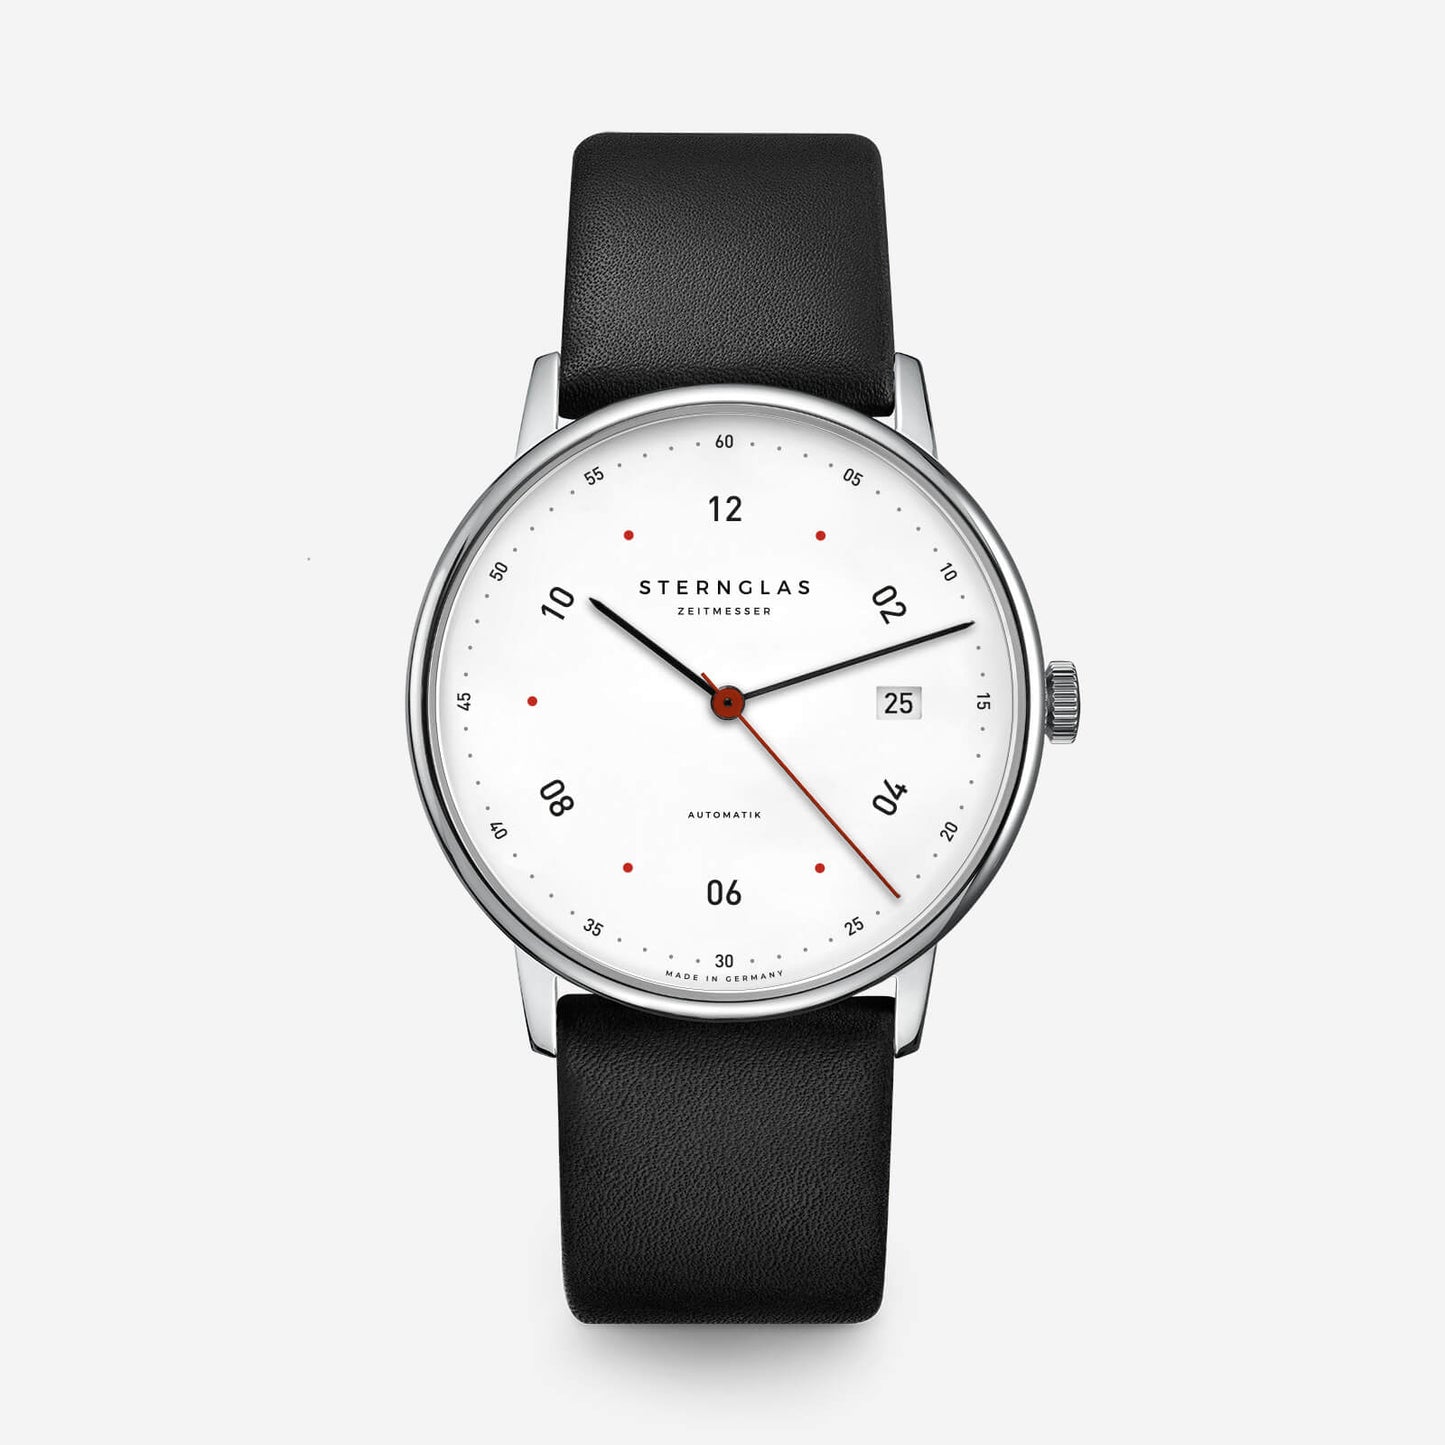 popup|Eine Armbanduhr ist mehr als nur eine Zeitanzeige|Sie ist ein Symbol von Tradition und Geschichte, eingebettet in eine lange Handwerkskunst. Die STERNGLAS Companion überzeugt dahingehend und verbindet eine hochwertige Verarbeitung mit einem minimalistischen und elegant- zurückhaltenden Design.